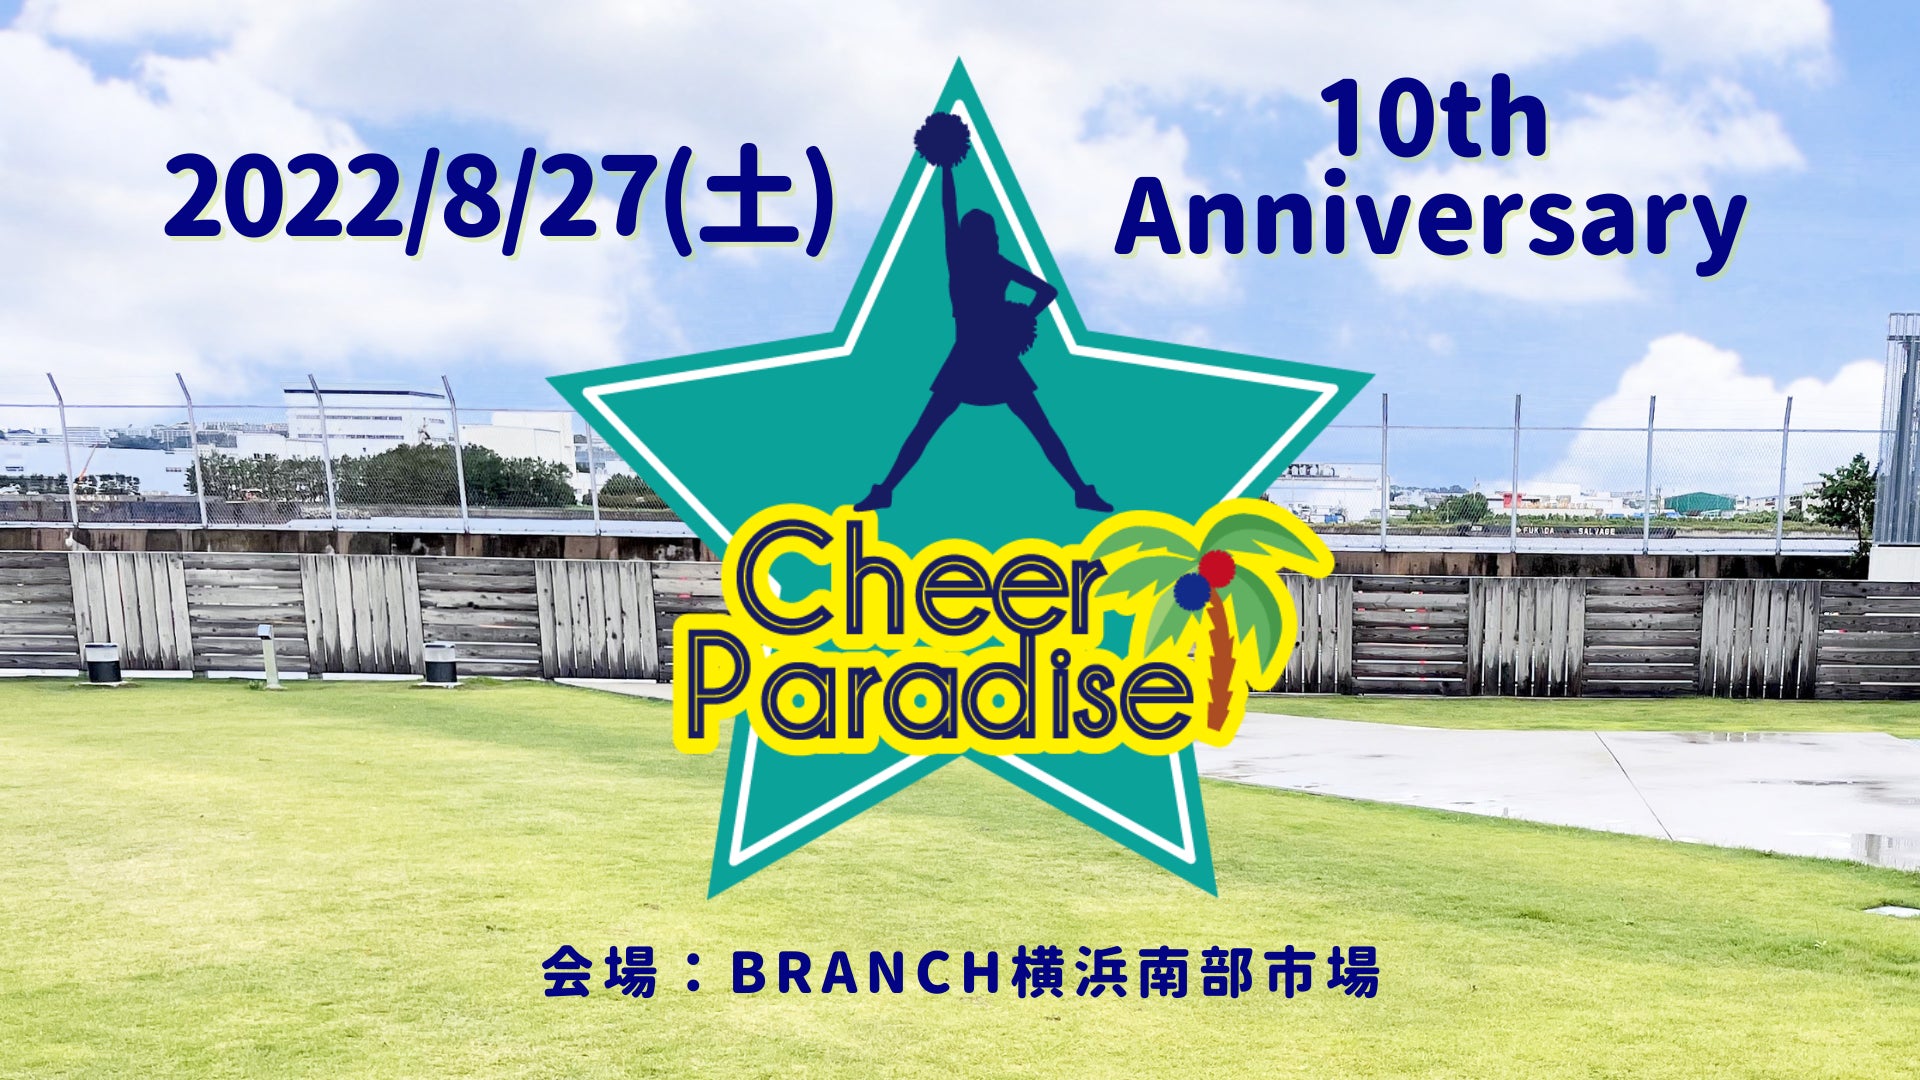 チアイベント「Cheer Paradise BRANCH横浜南部市場」、『横浜市 市民局』の後援が決定のサブ画像1